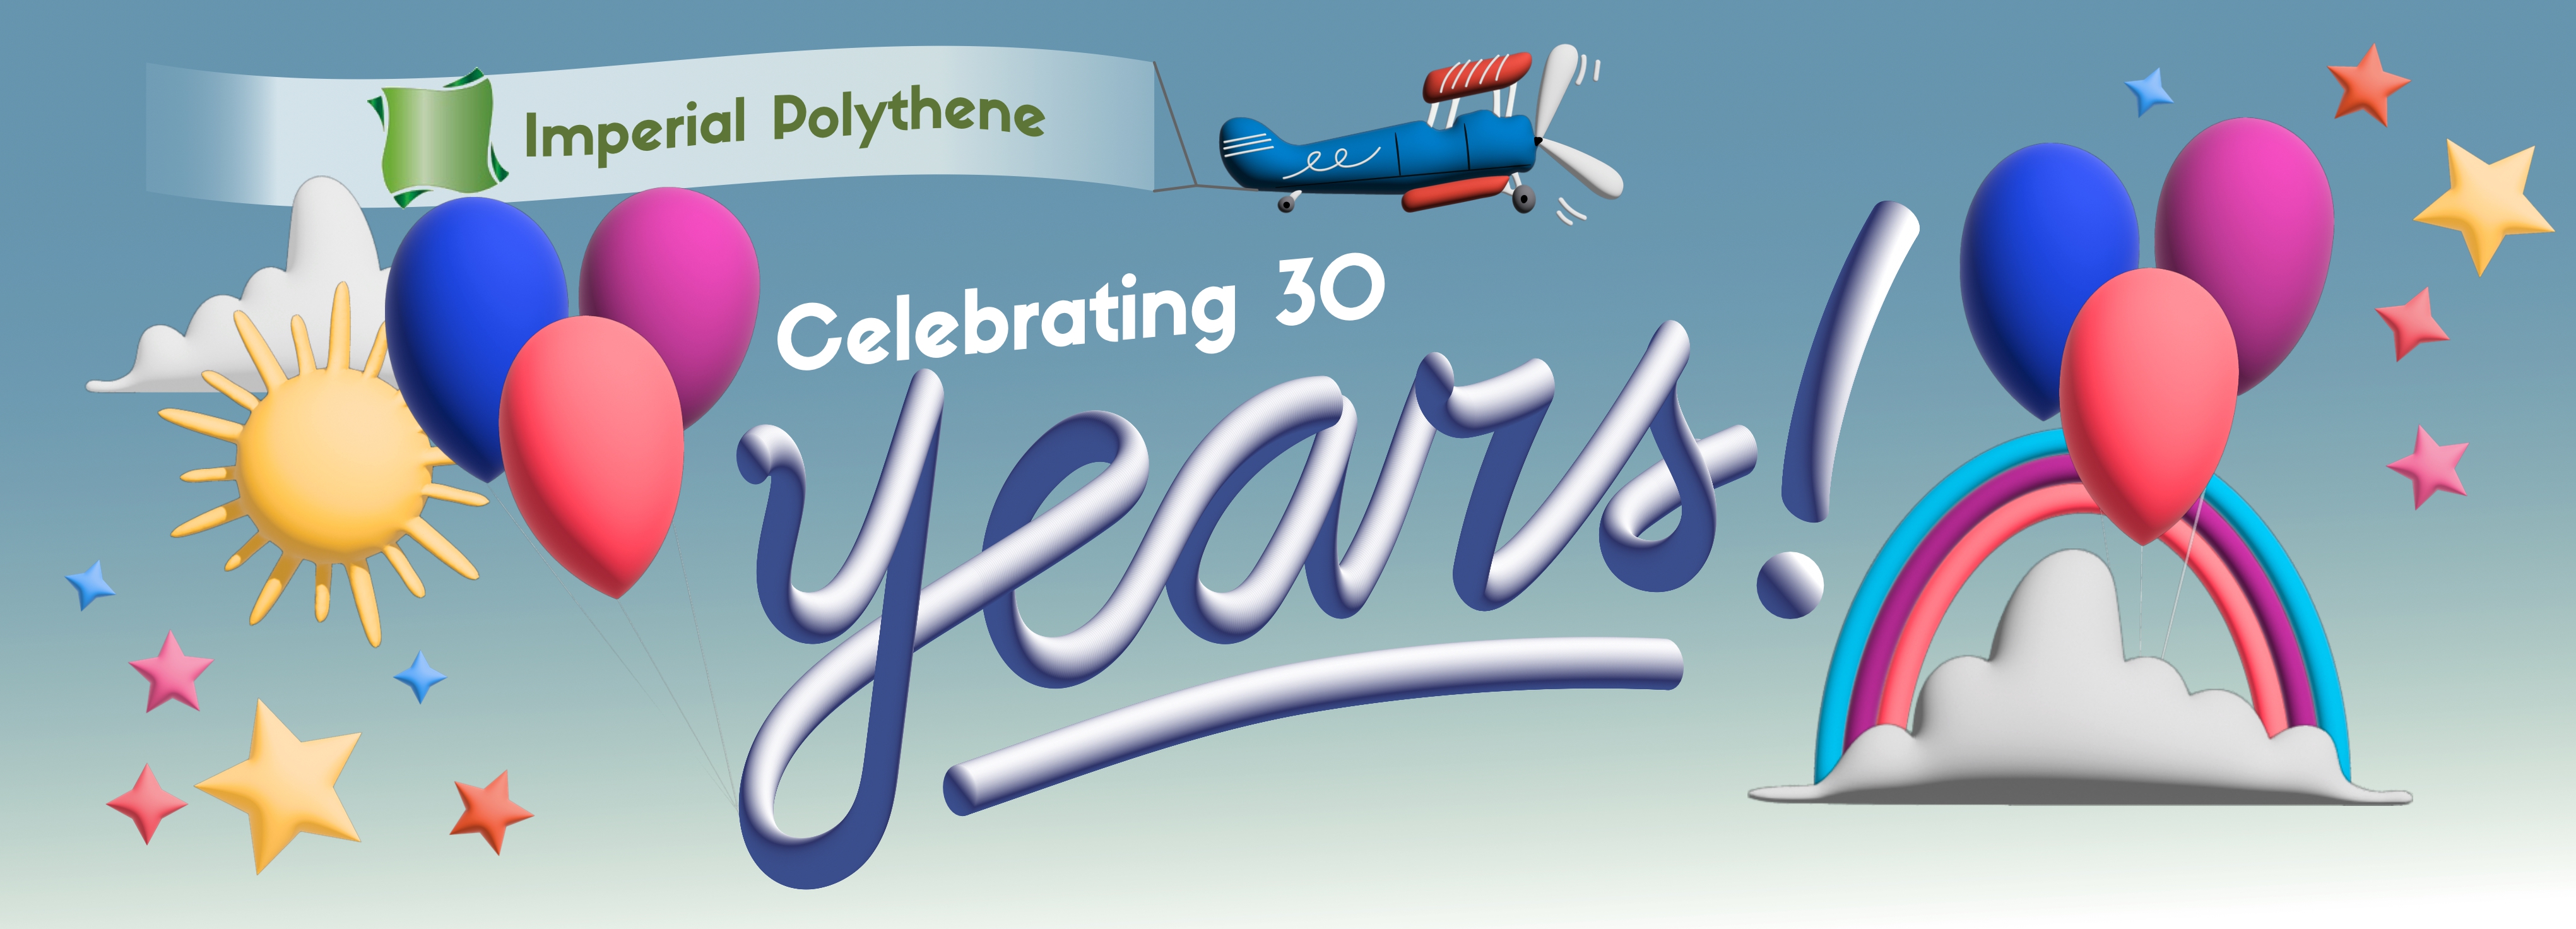 Happy birthday Imperial Polythene - Celebrating 30 Years